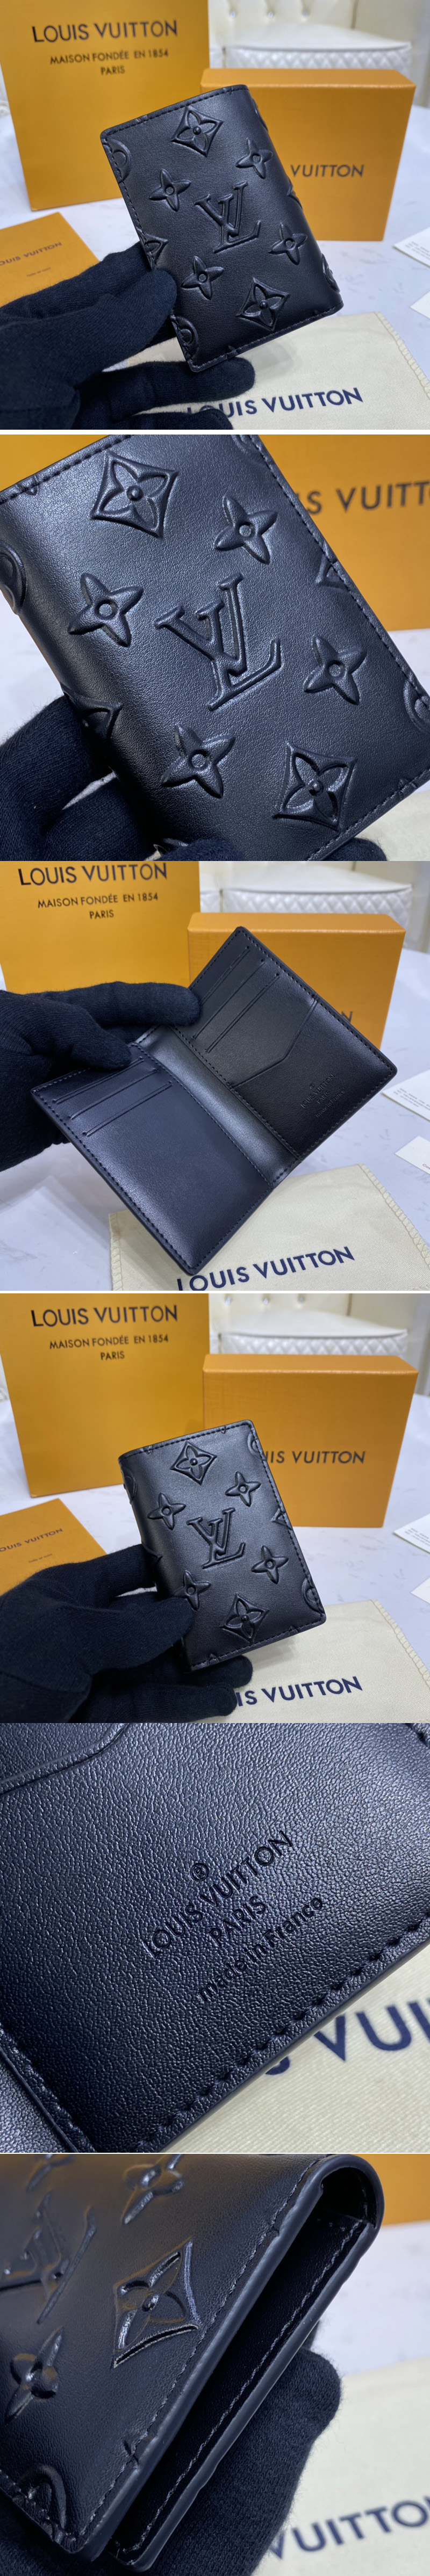 Louis Vuitton Pocket Organizer Monogram Seal Black